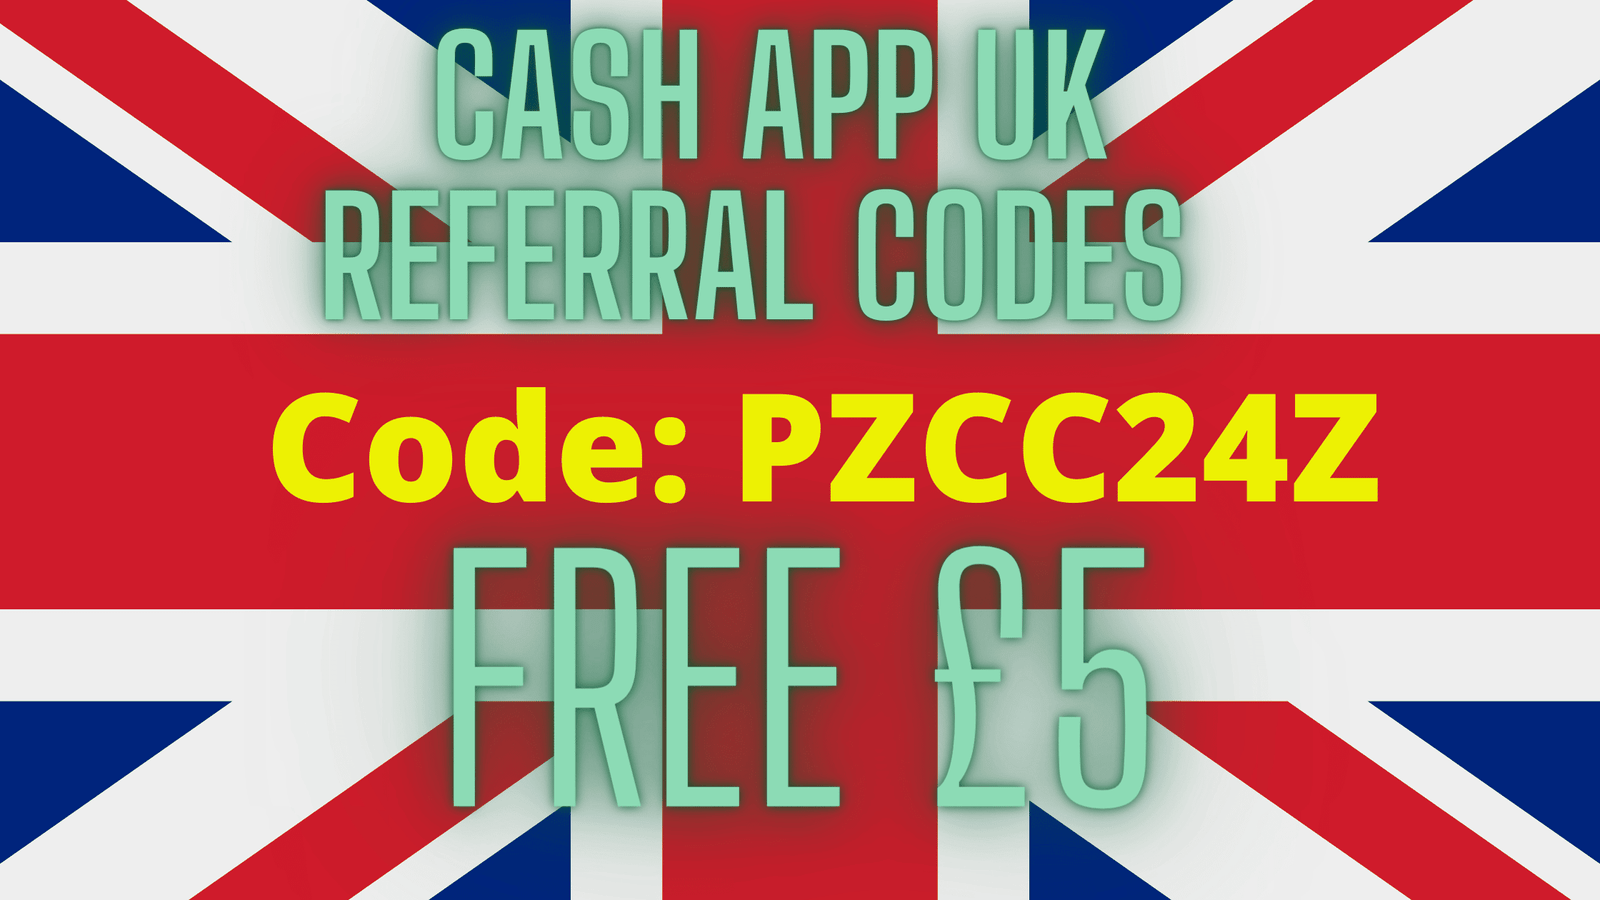 Cash App UK referral code: PZCC24Z